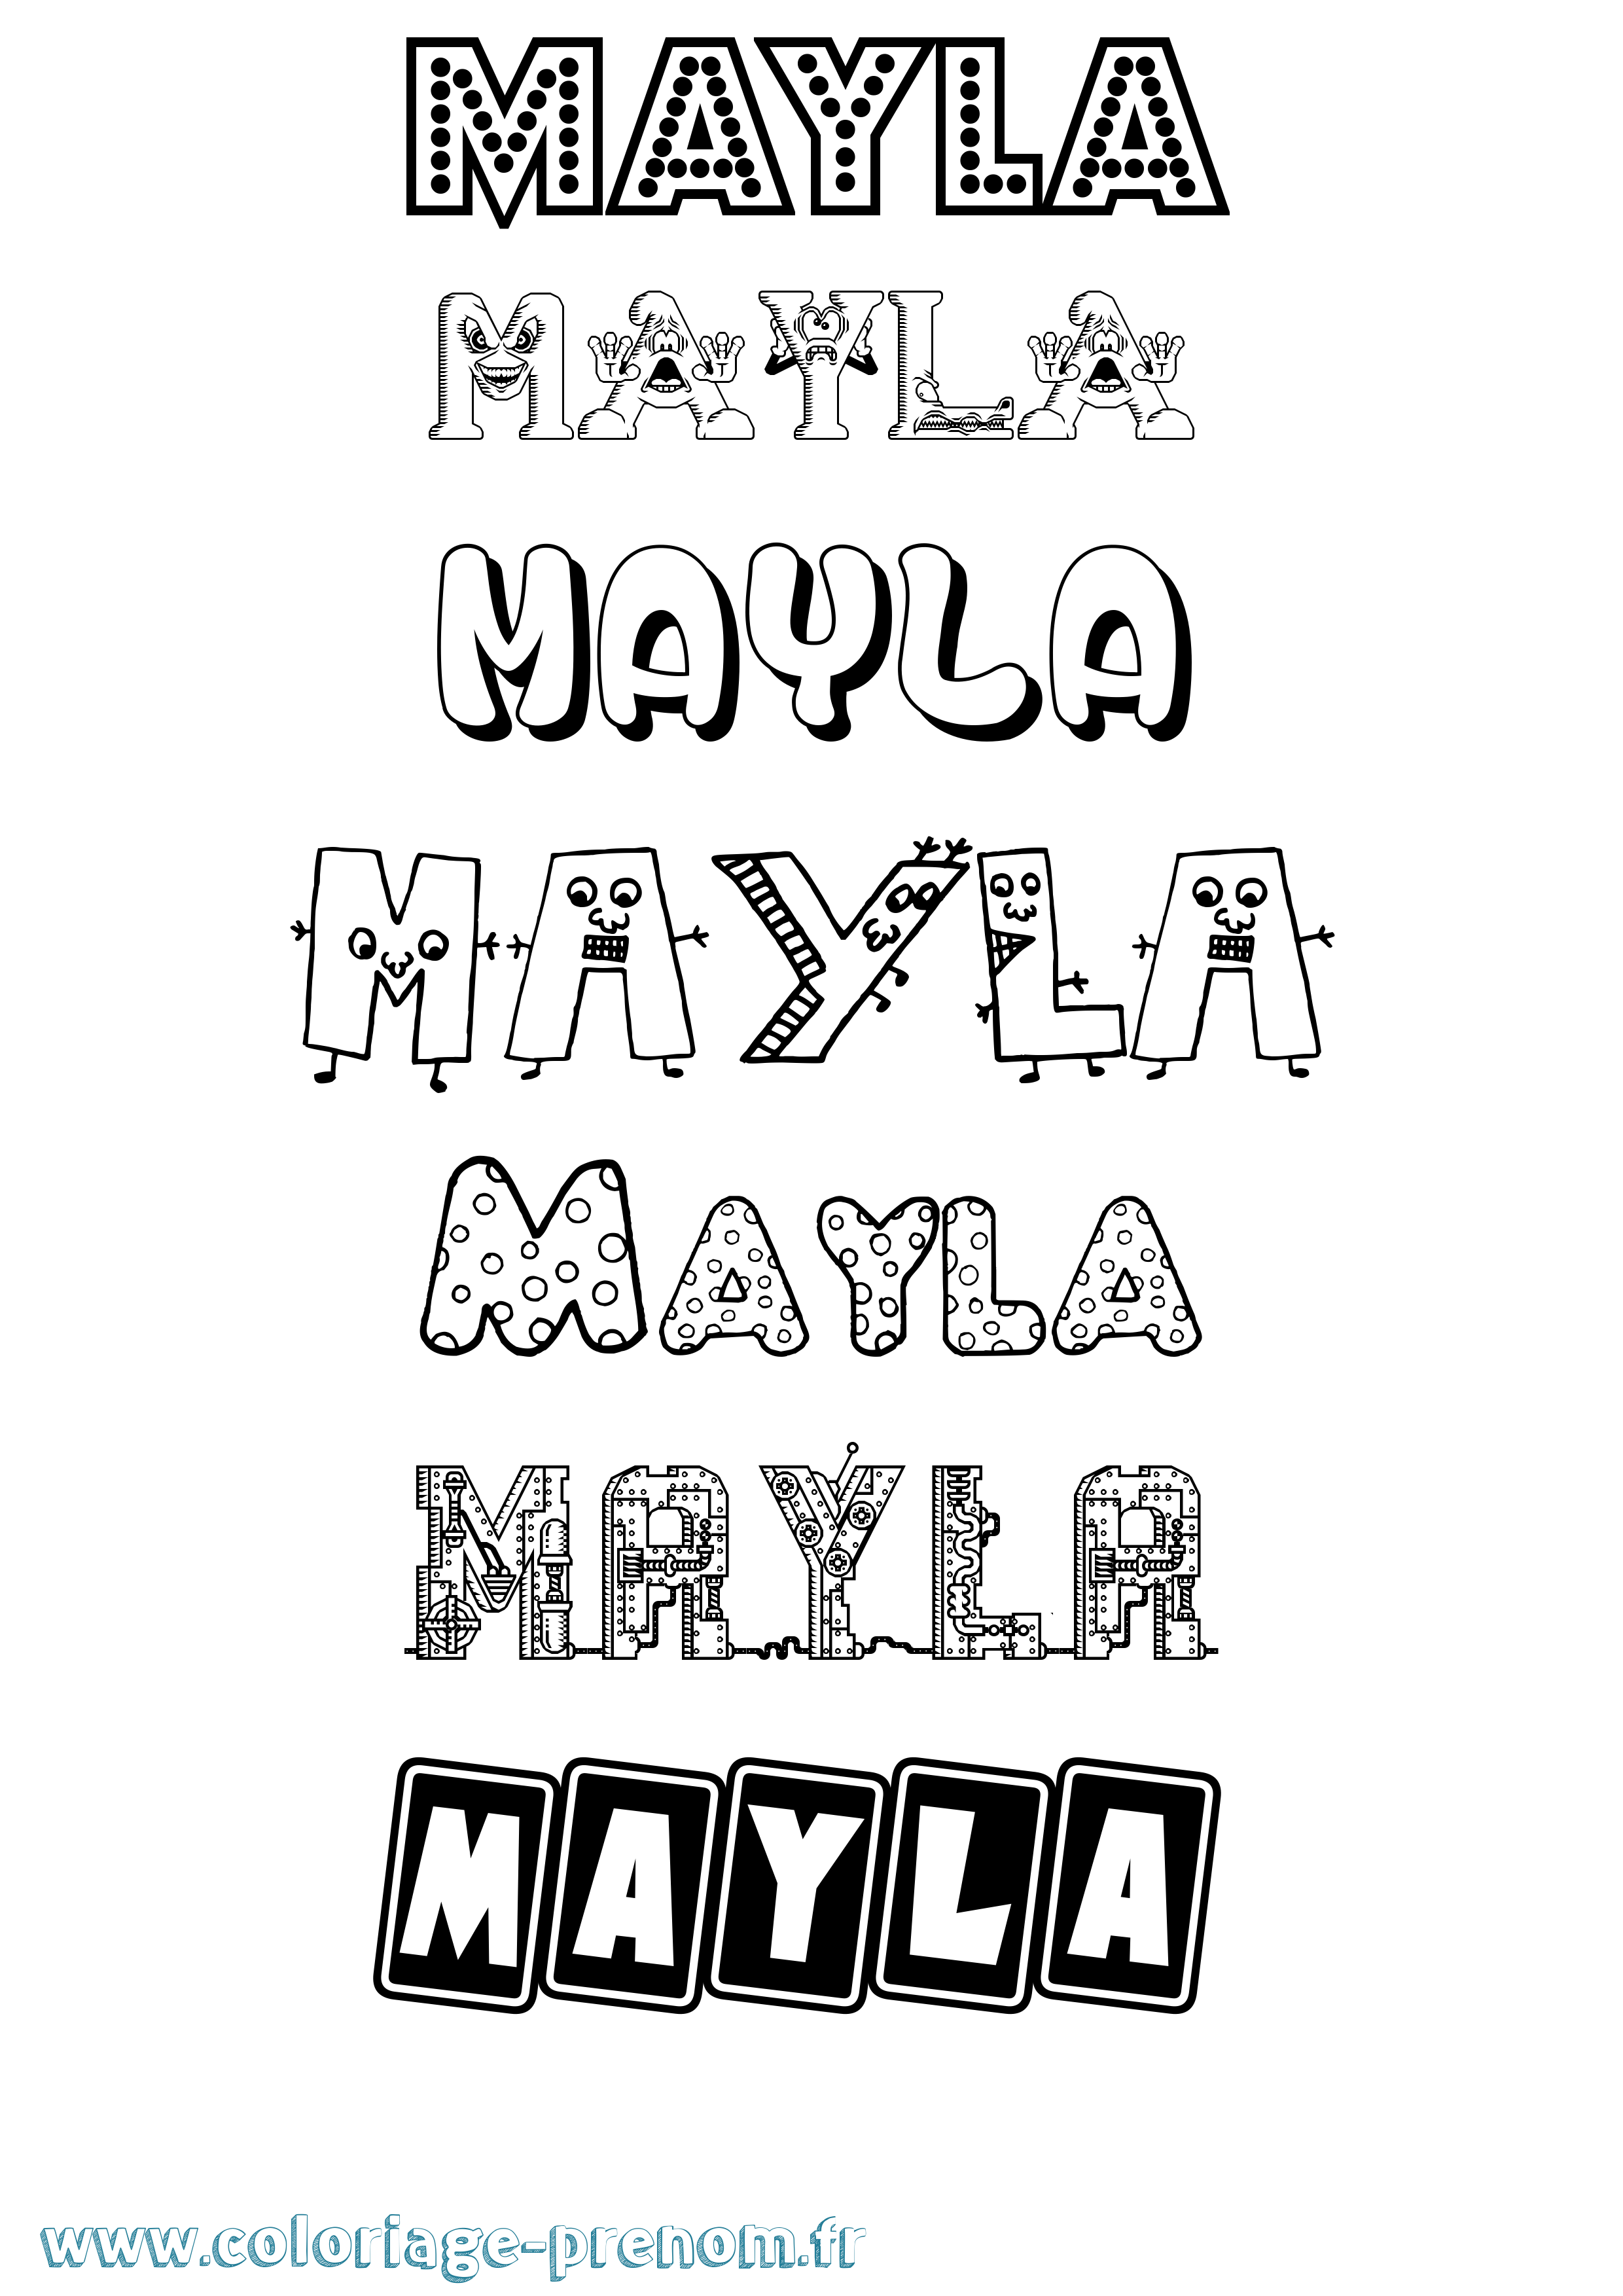 Coloriage prénom Mayla Fun